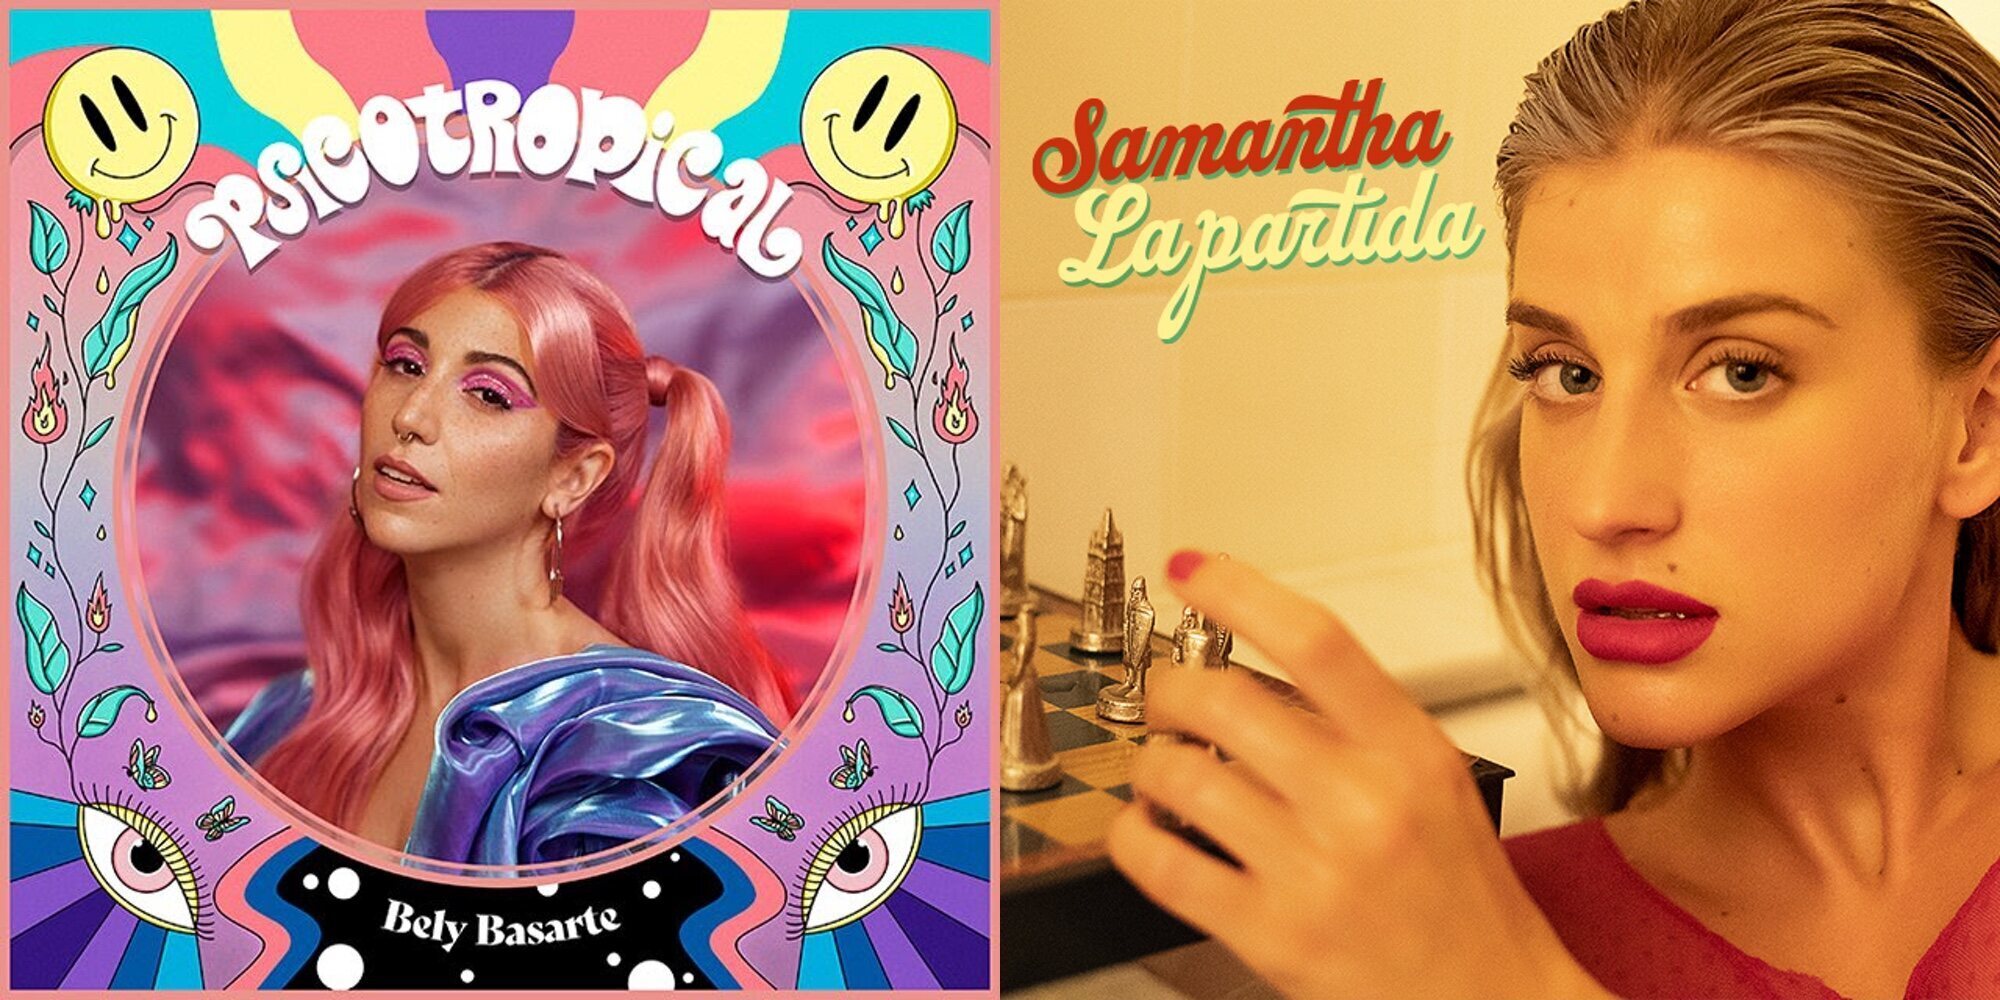 Samantha, Bely Basarte, Beatriz Luengo... Los lanzamientos musicales de la semana